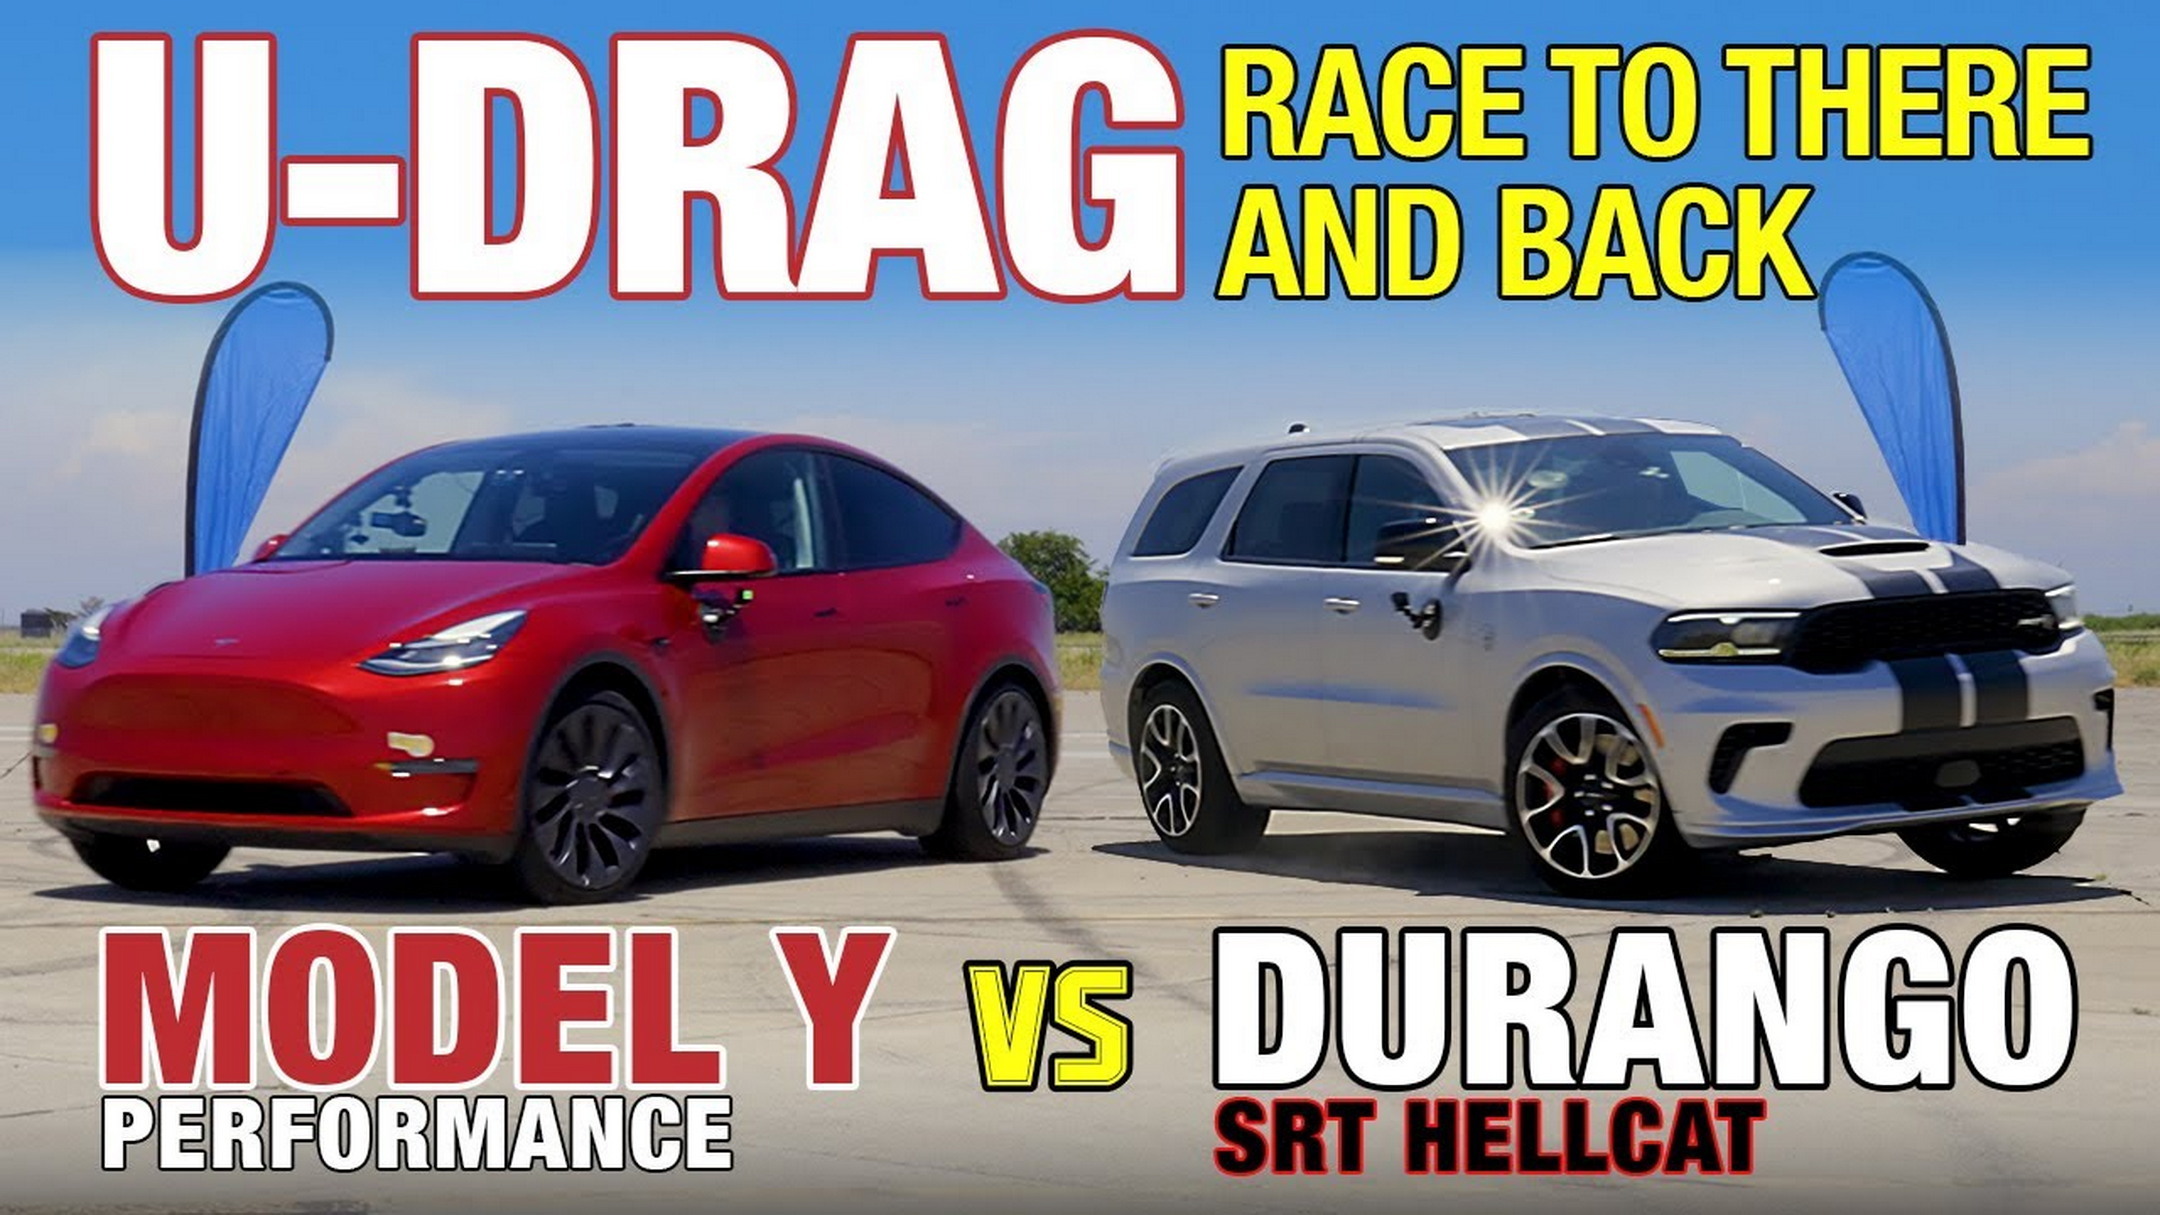 Dodge Durango SRT Hellcat supera al Tesla Model Y en la carrera U-Drag